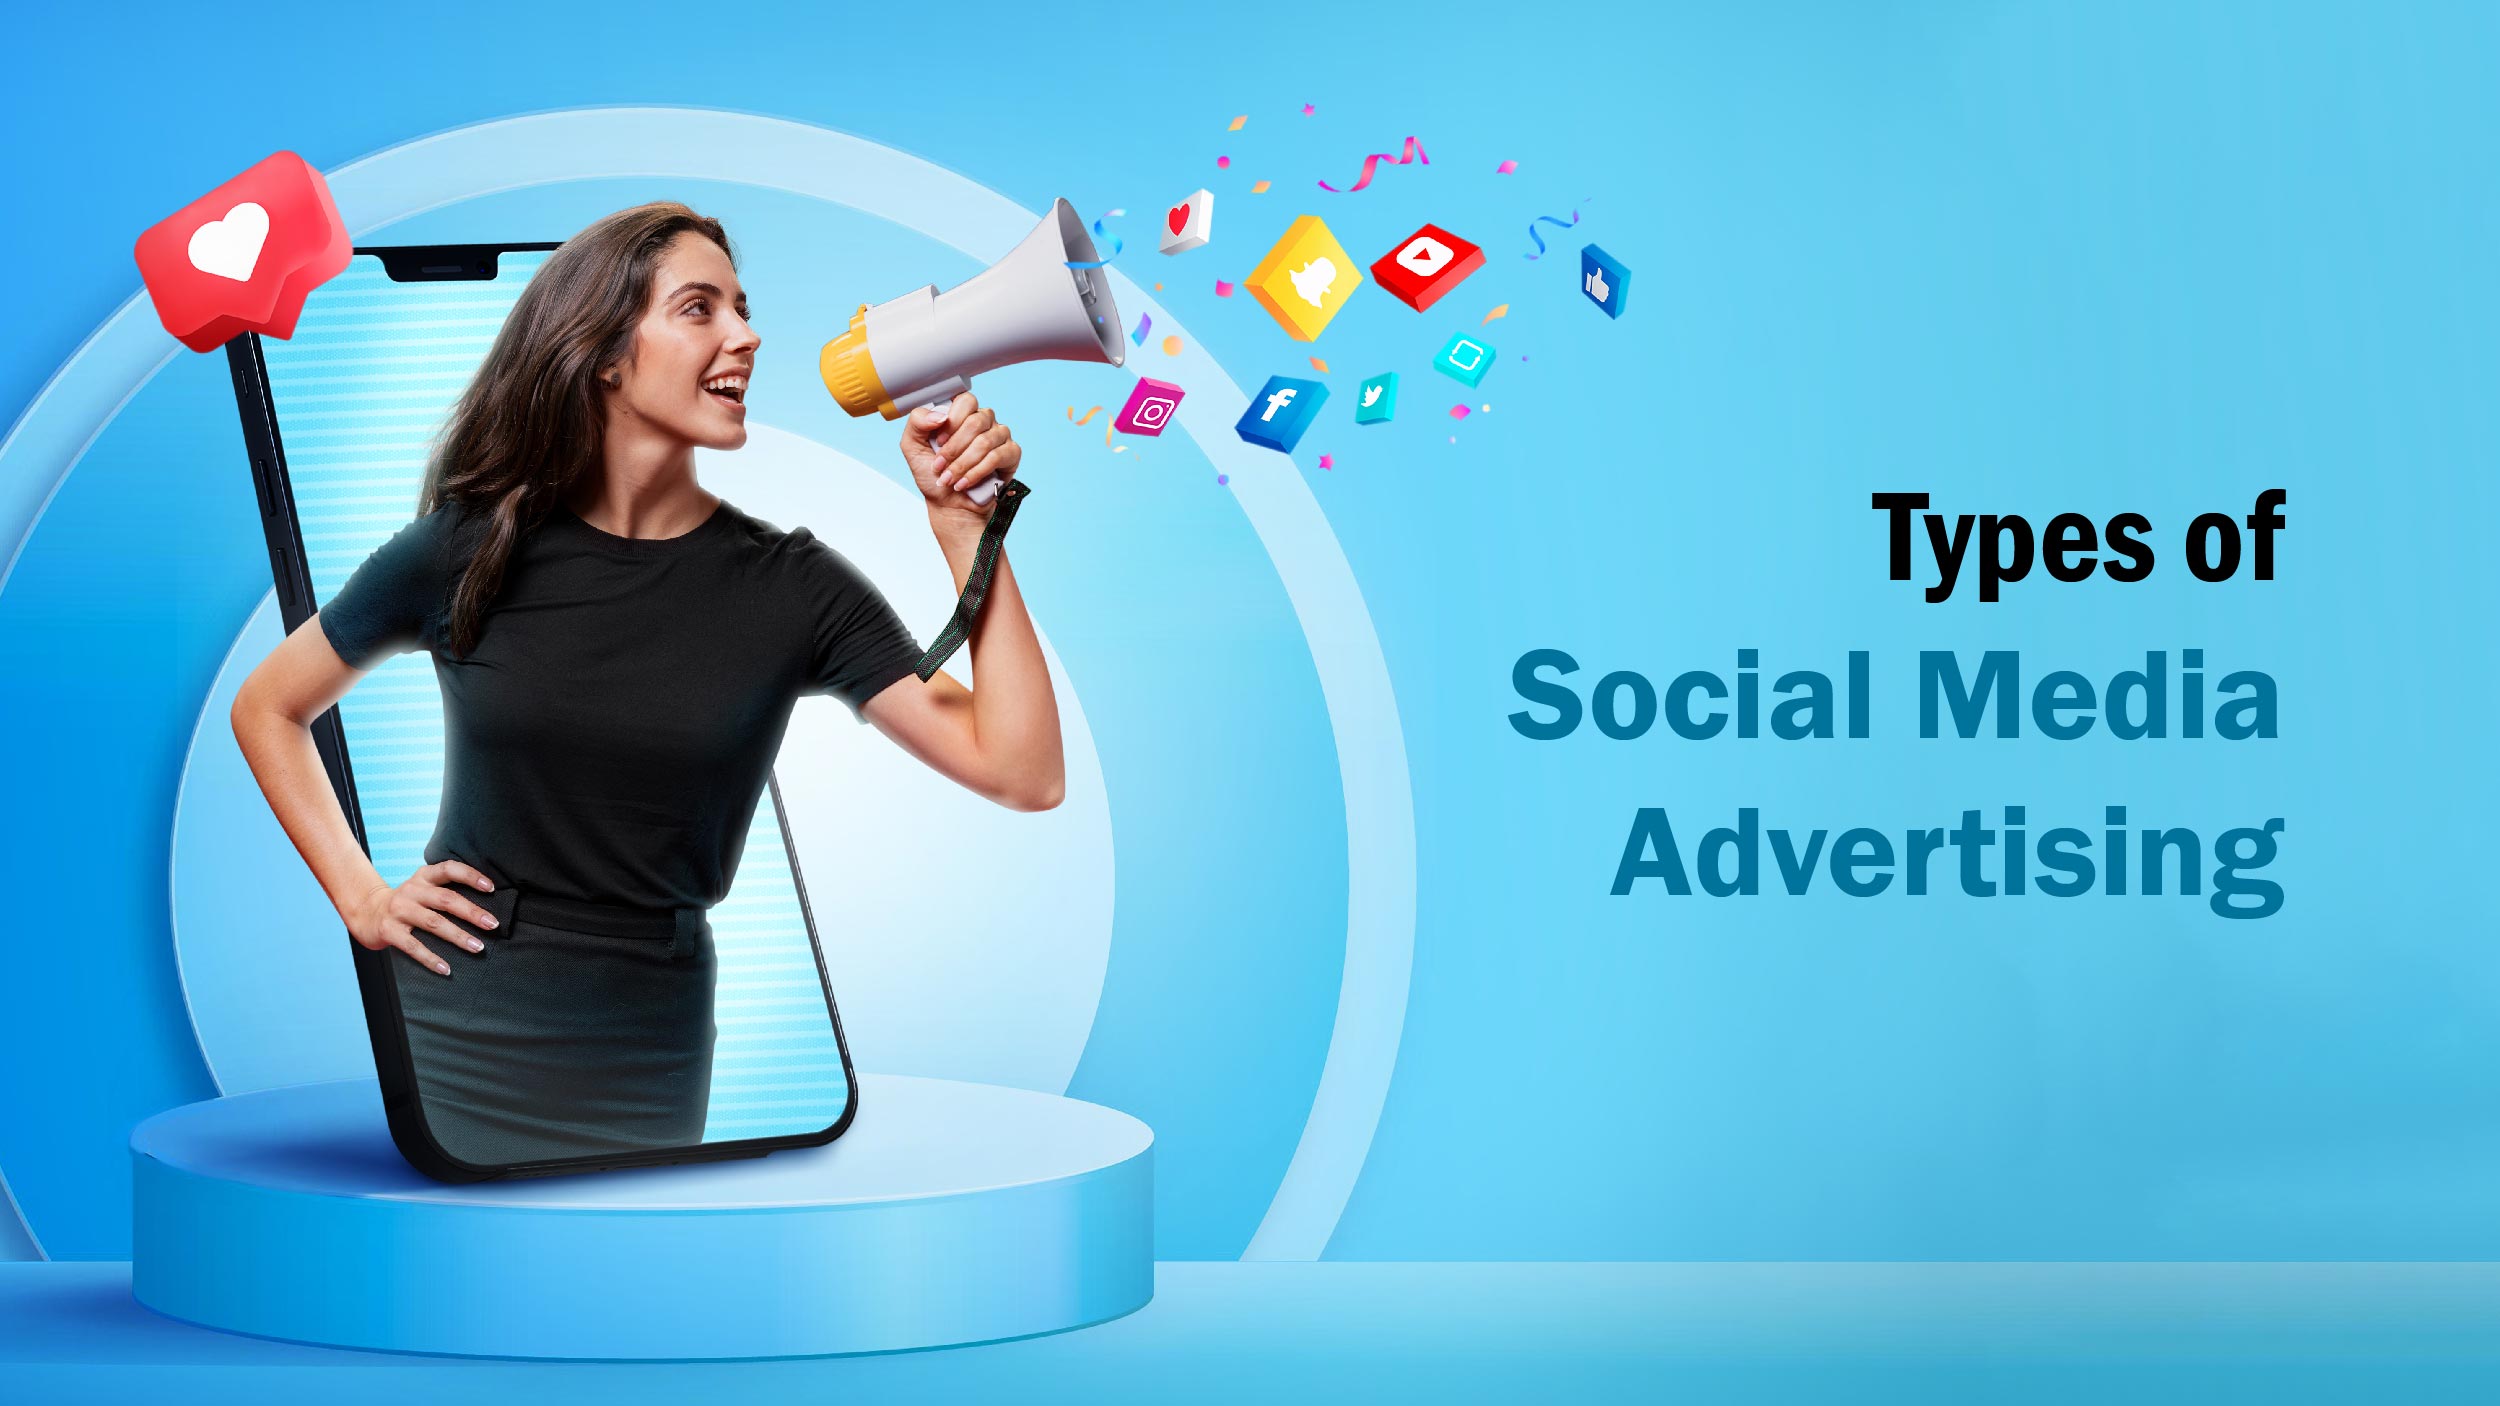 Social Media advertising